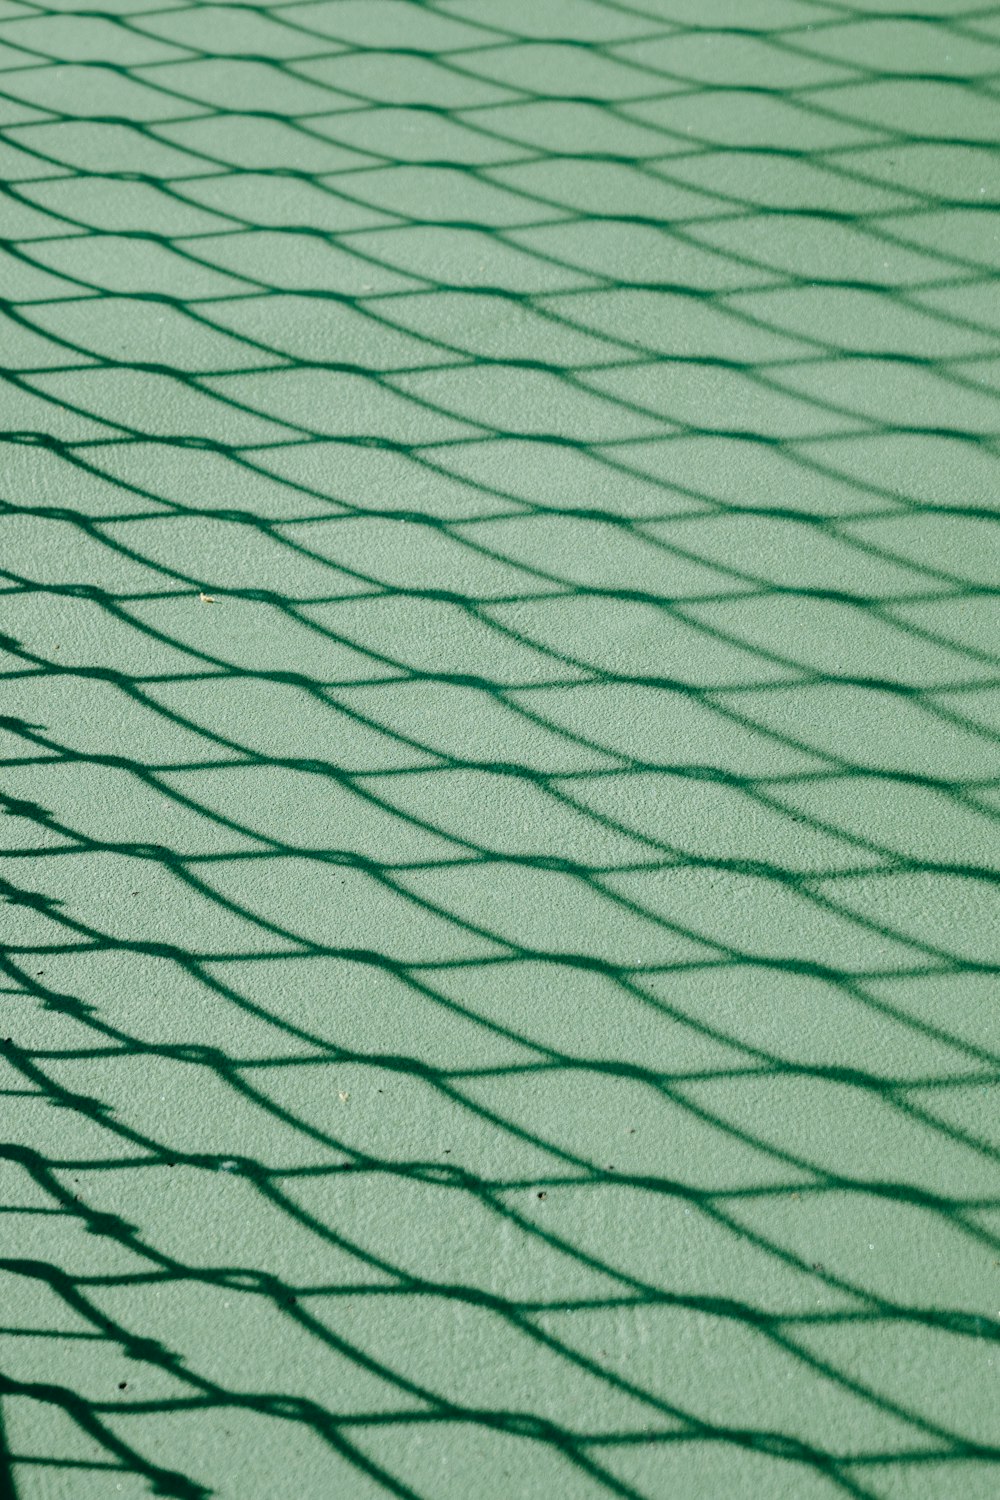 una raqueta de tenis está colocada en una cancha de tenis